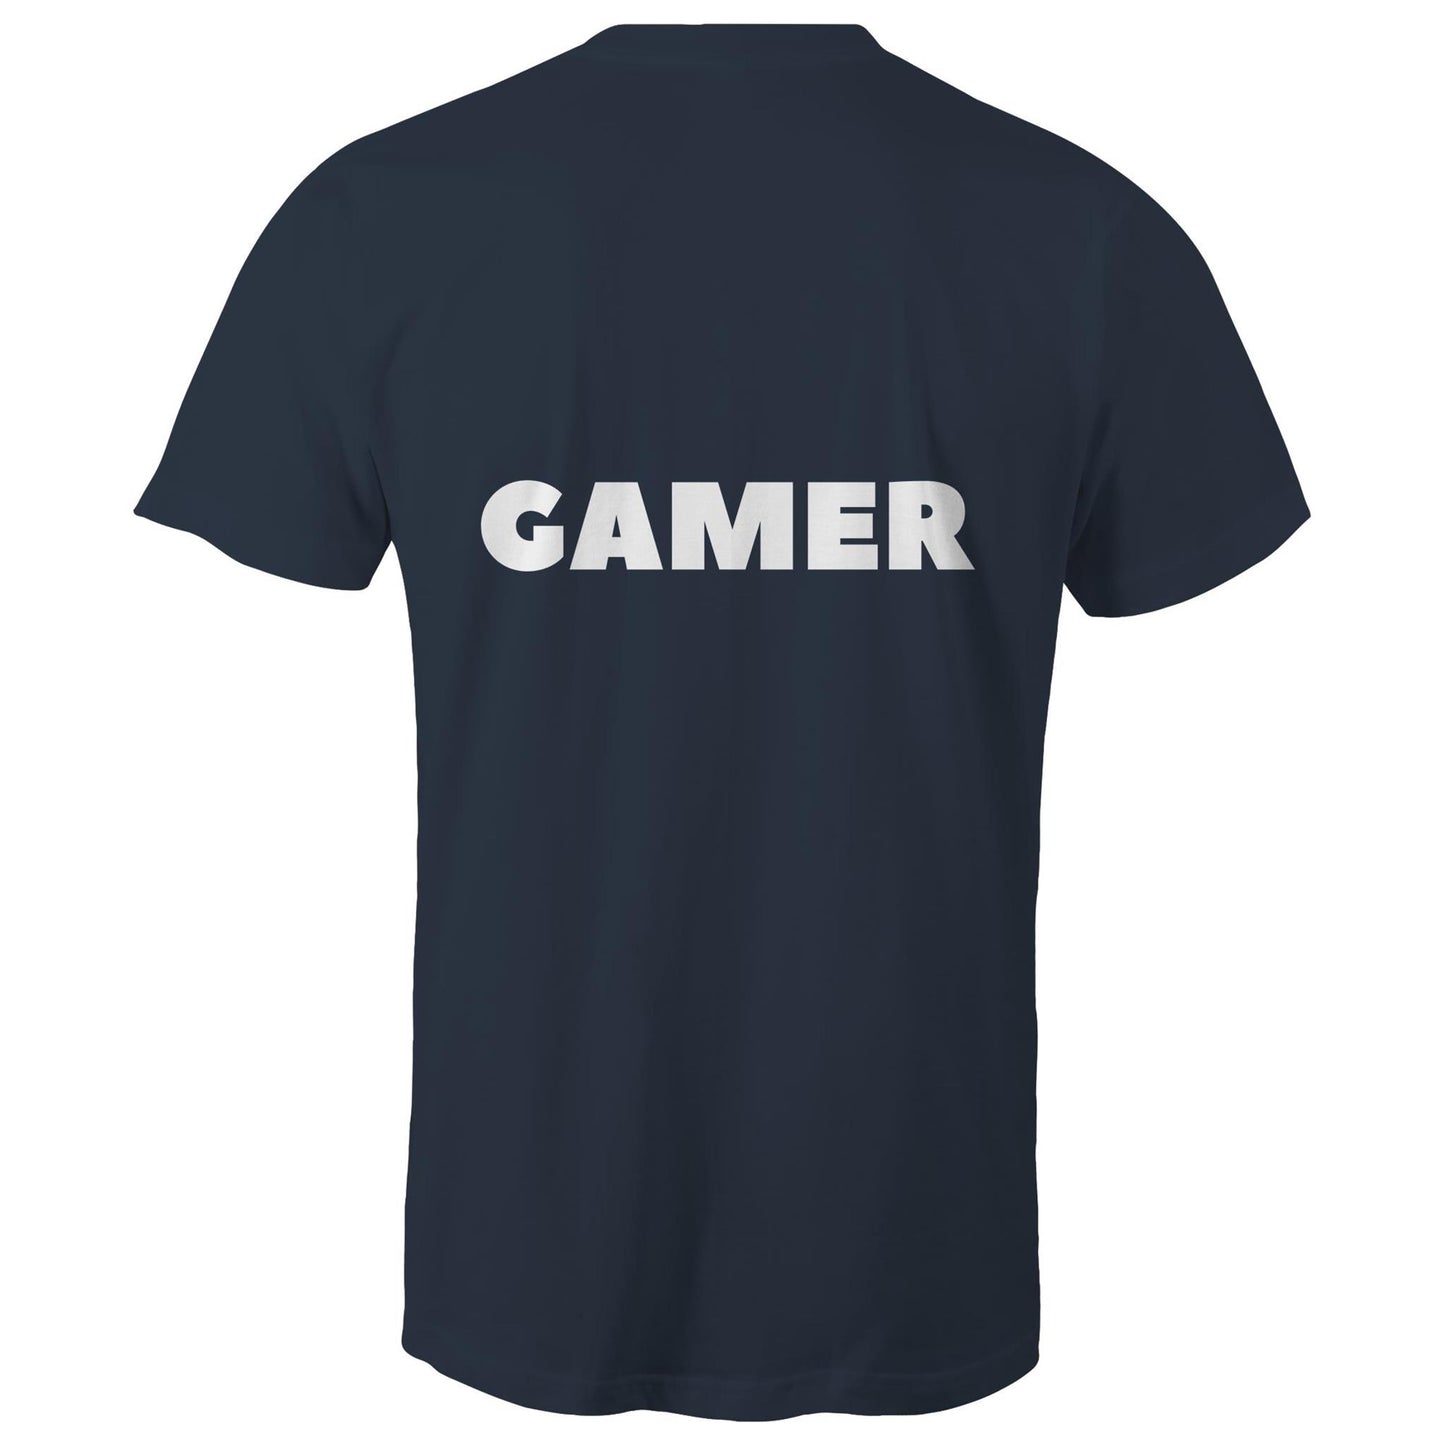 GAMER - Unisex T-Shirt